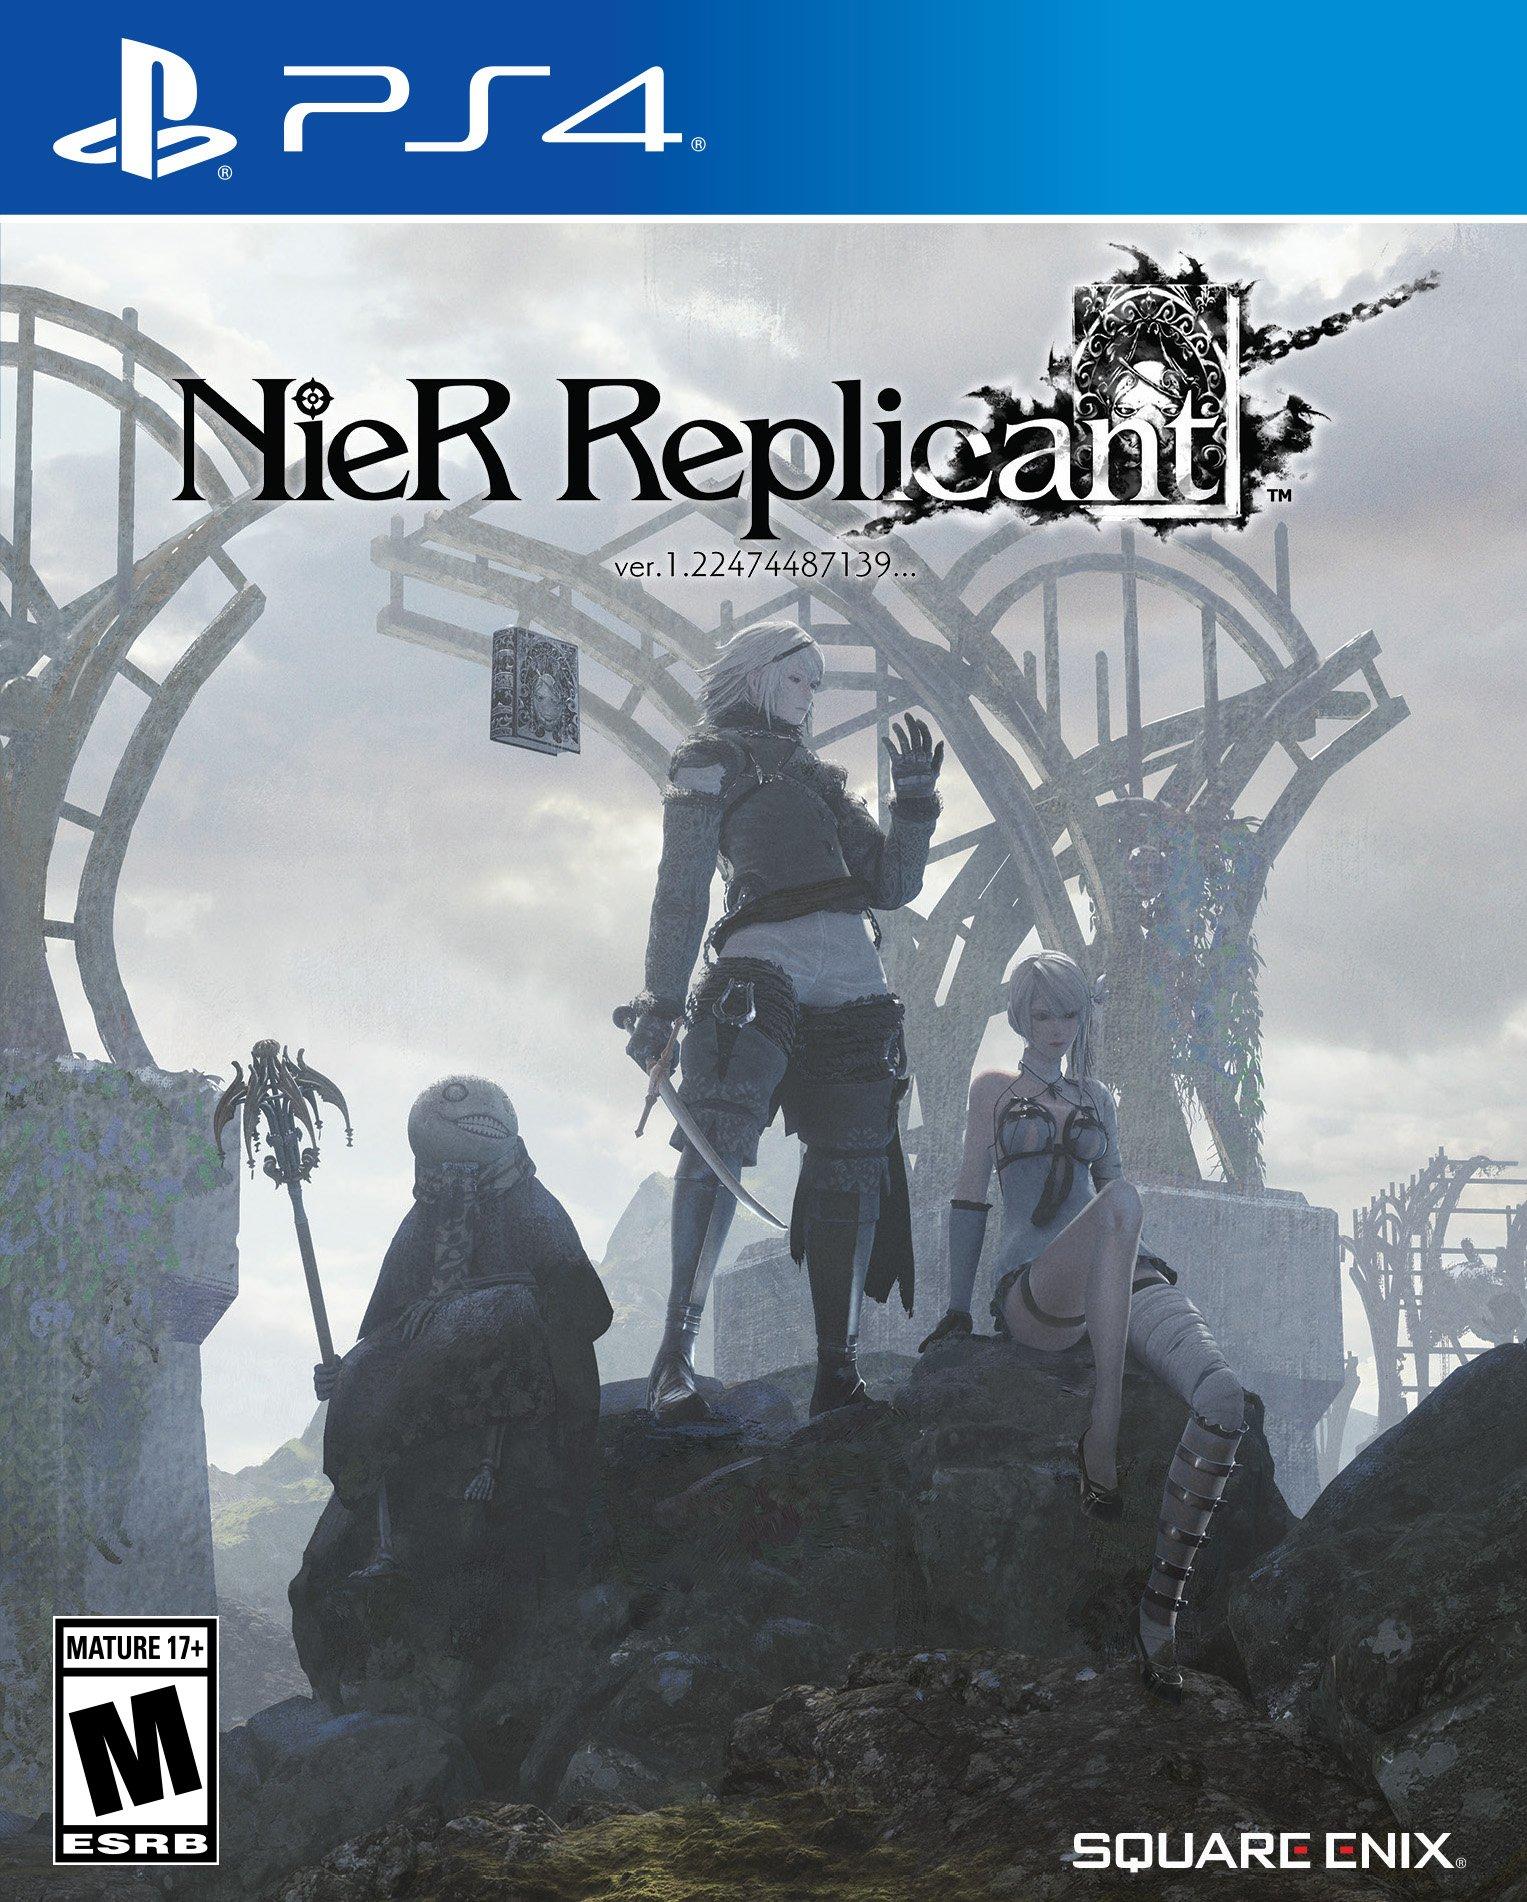 NieR Replicant ver.1.22474487139... - PS4 | PlayStation 4 | GameStop